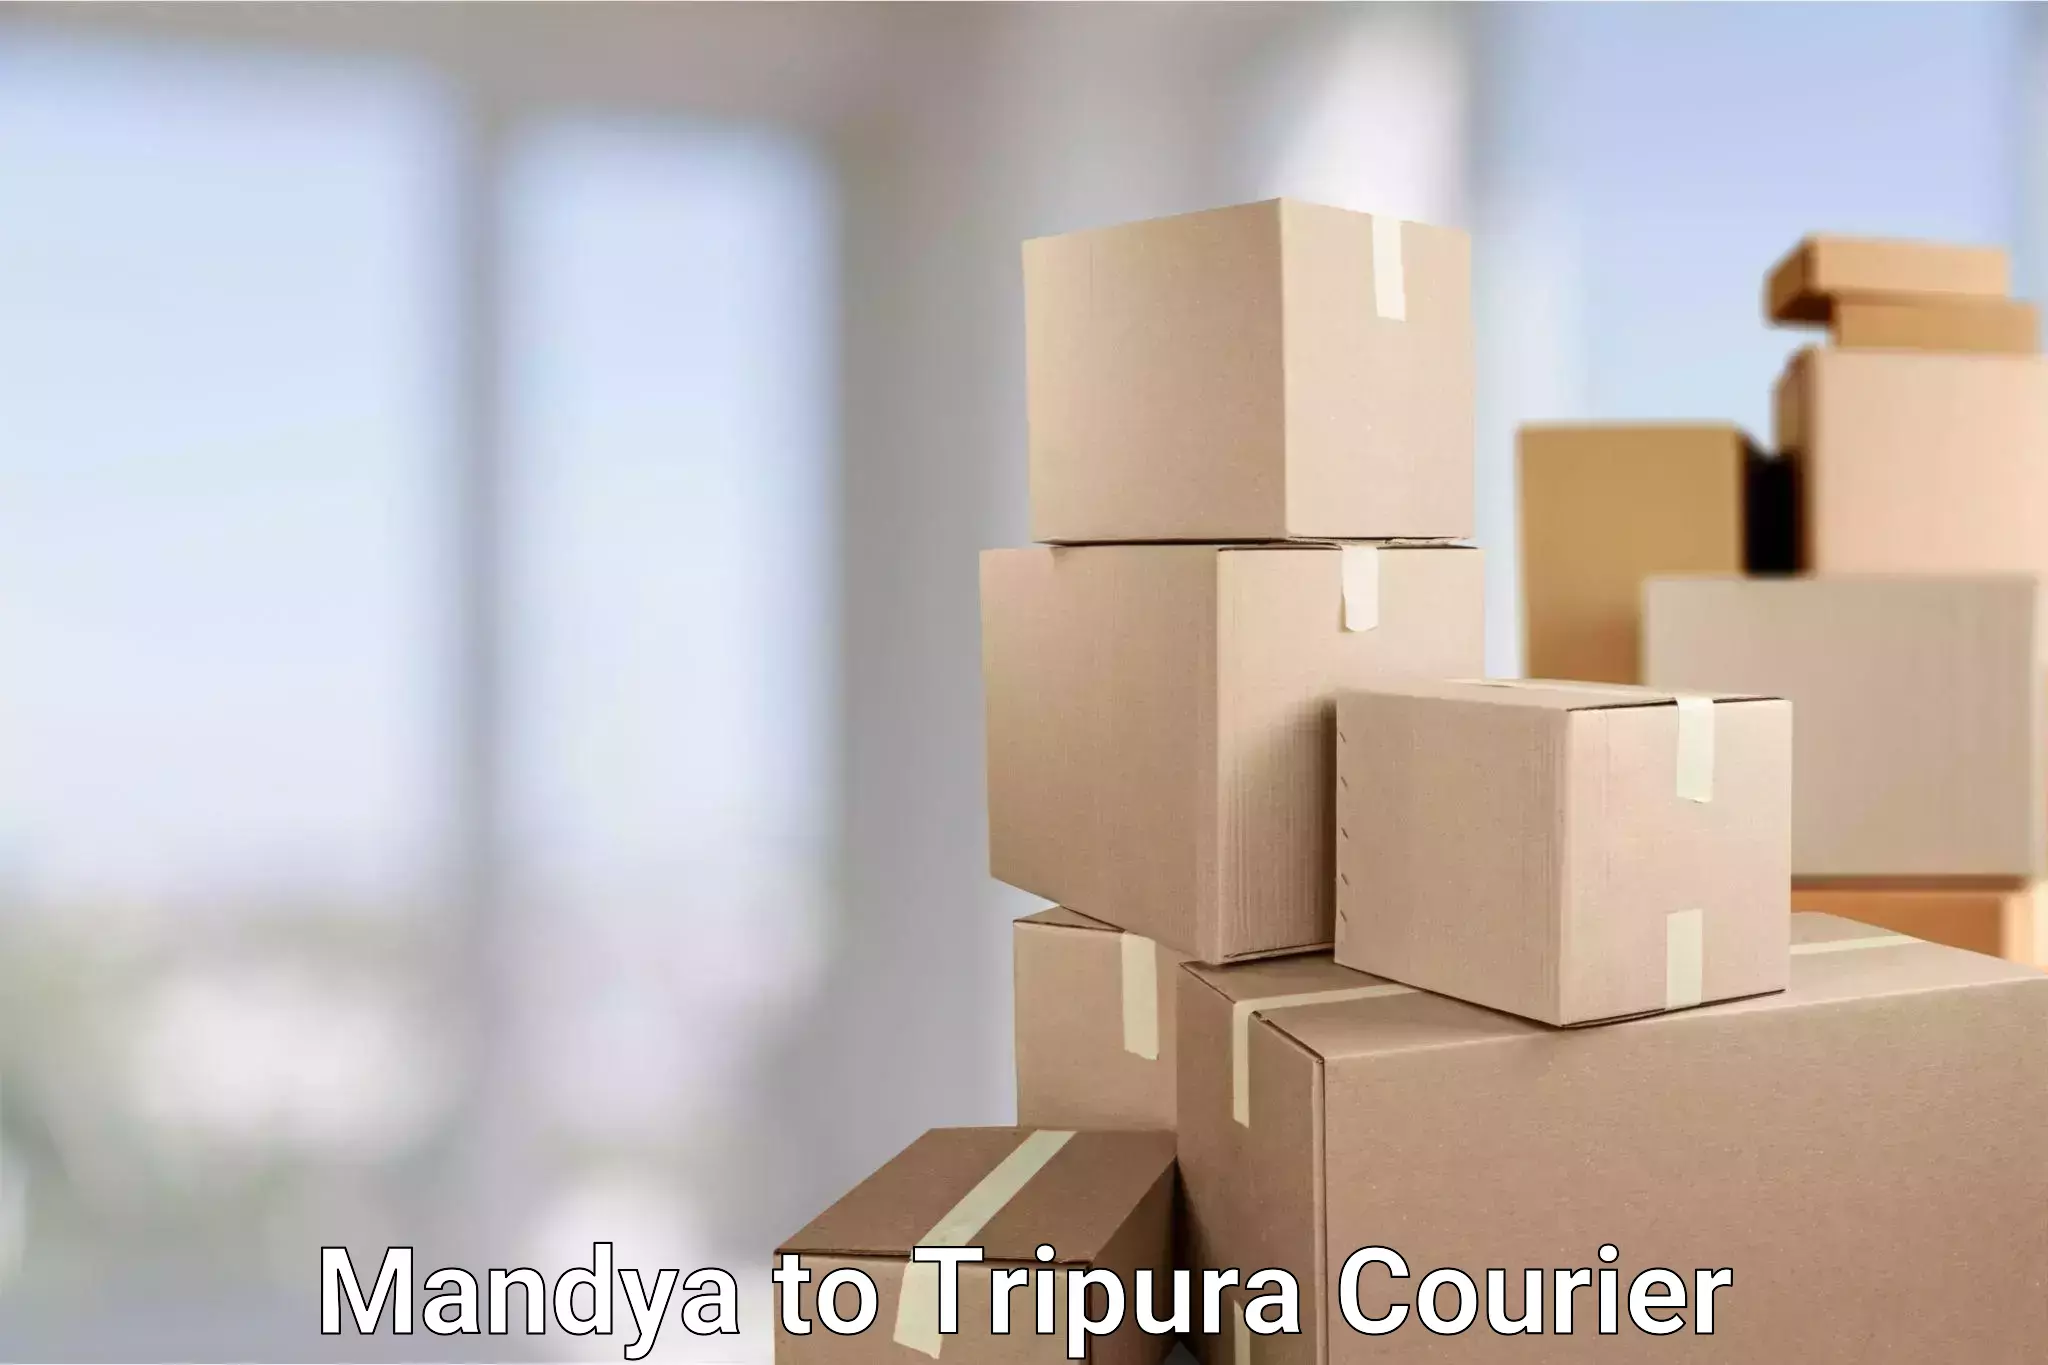 24-hour courier services Mandya to Manu Bazar